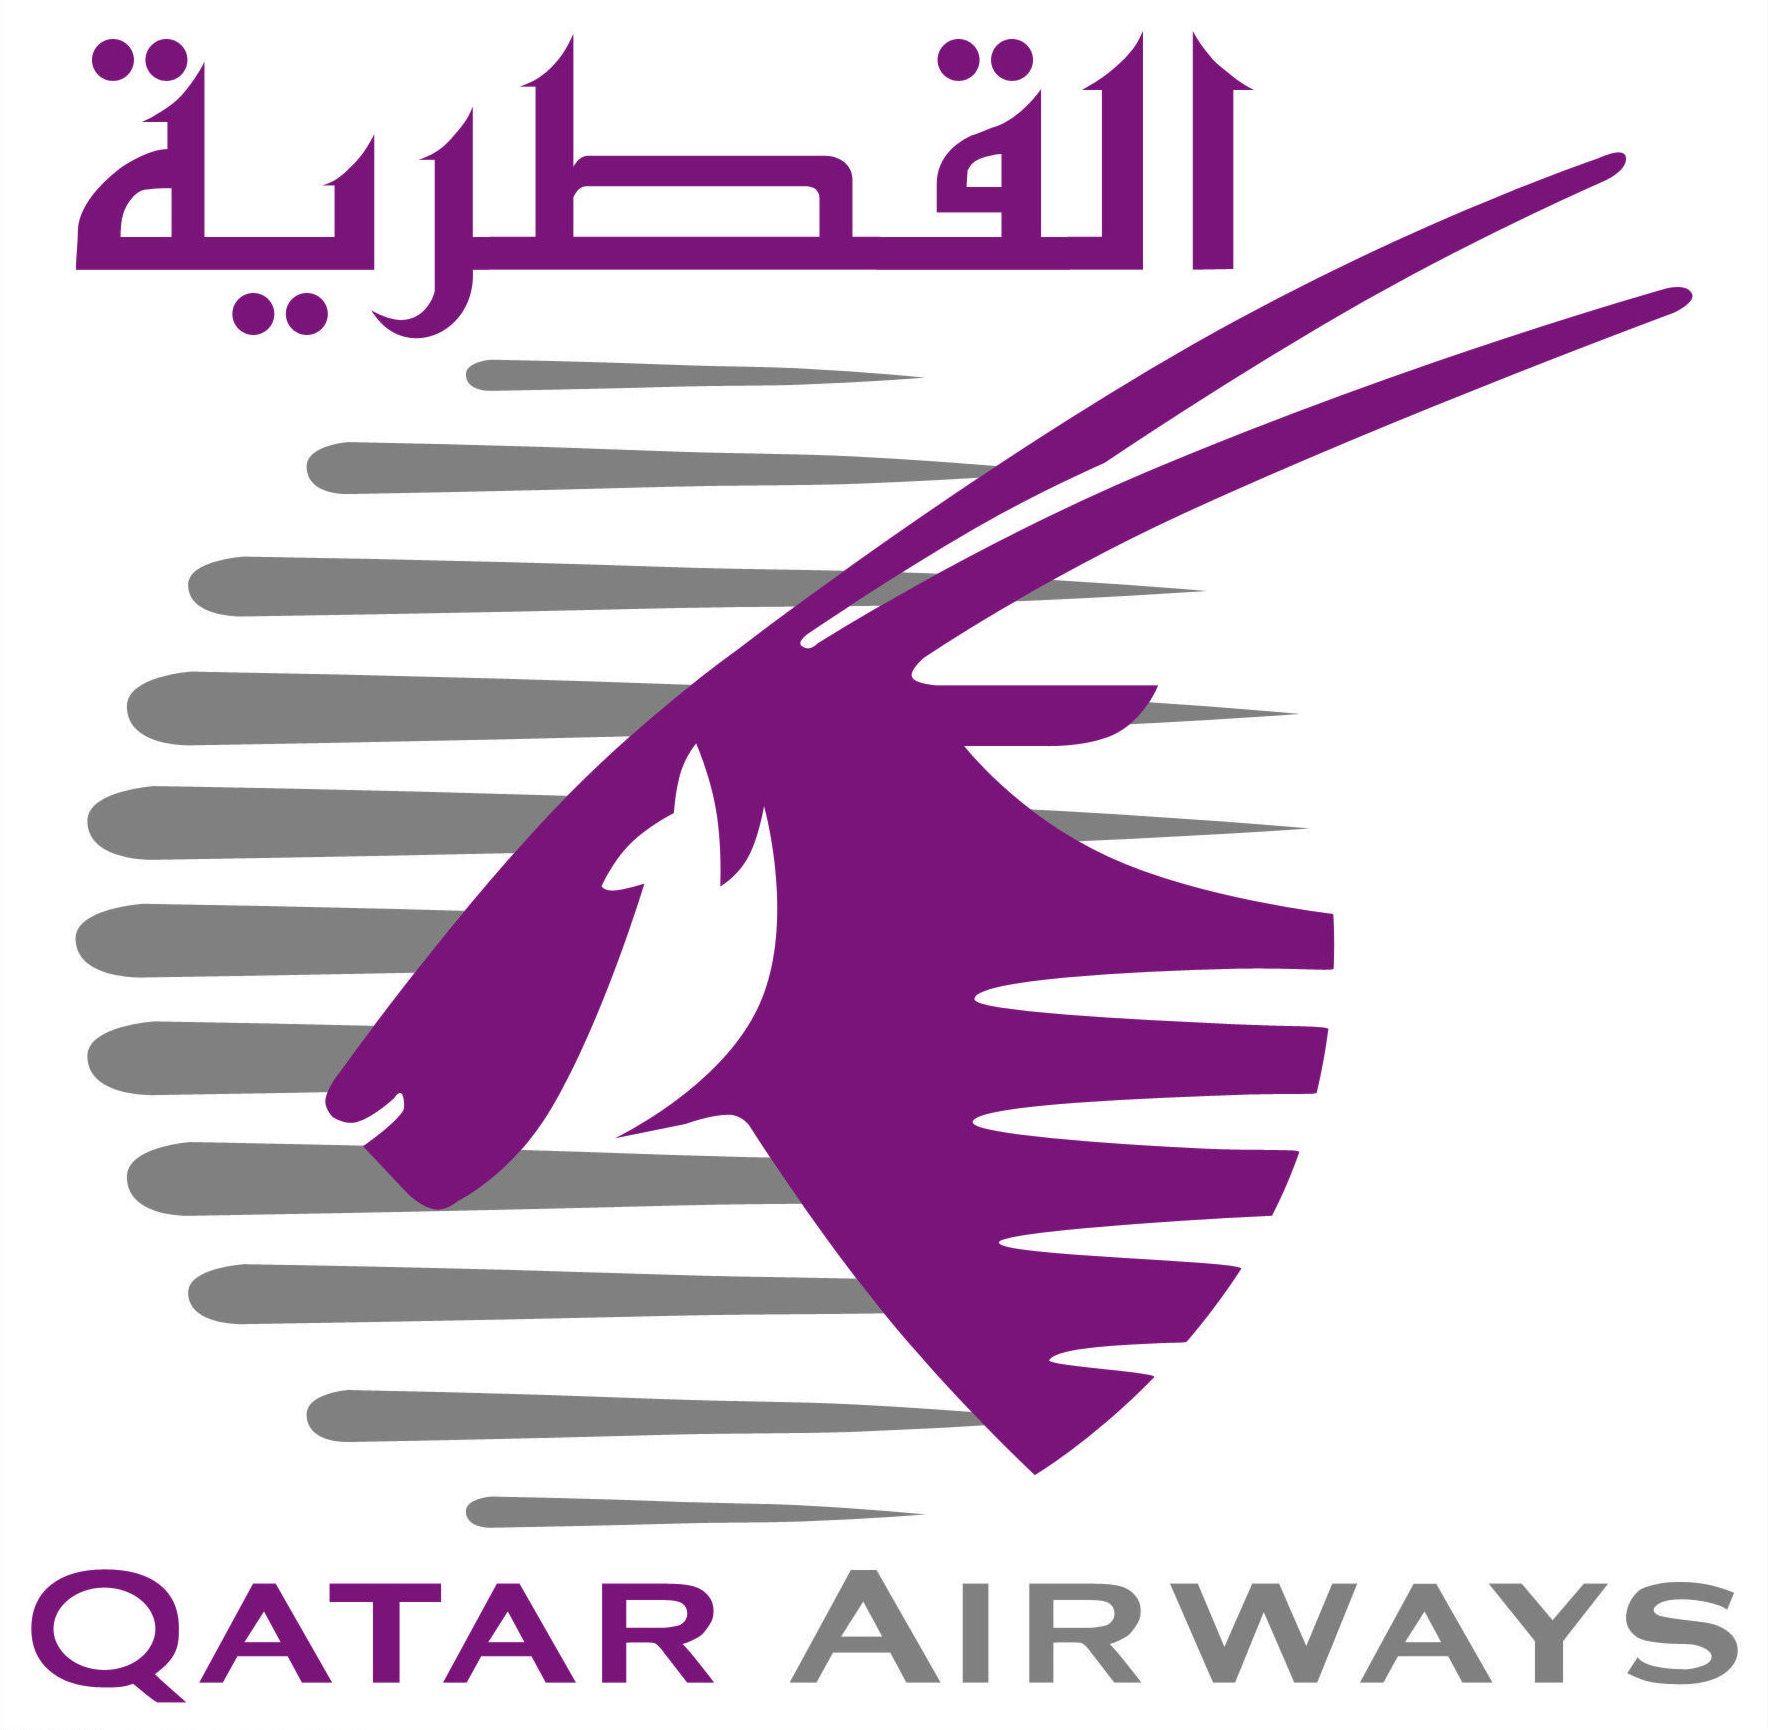 Qatar Airways Logo - Qatar Airways | National Airlines Logos | Pinterest | Airline logo ...